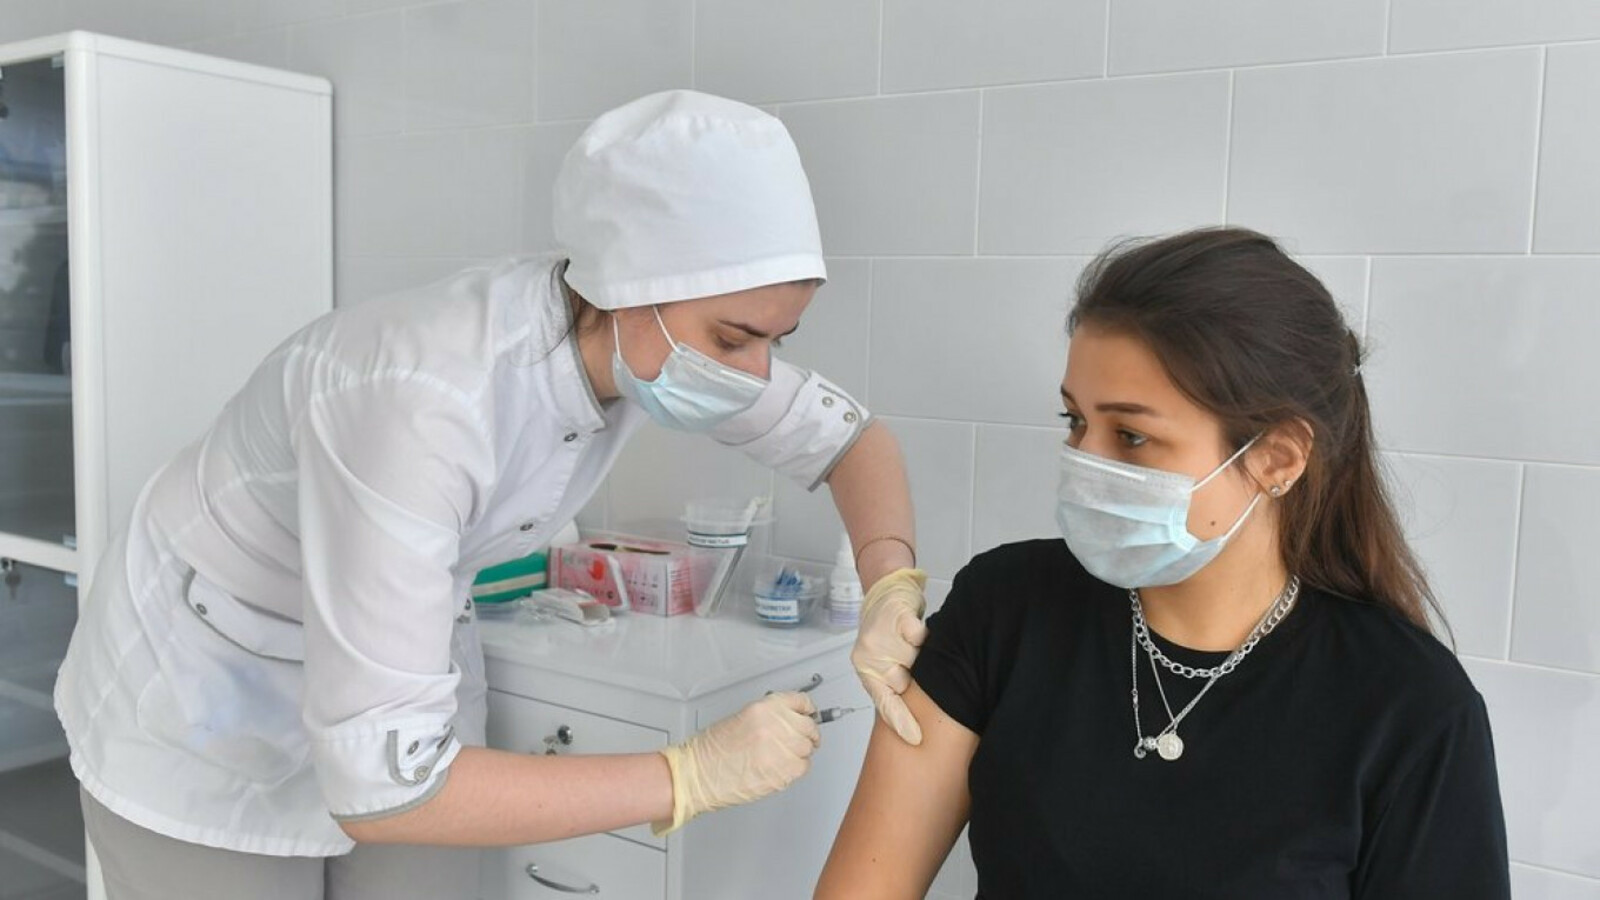 В Баймаке открылись дополнительные медпункты для вакцинации от коронавируса